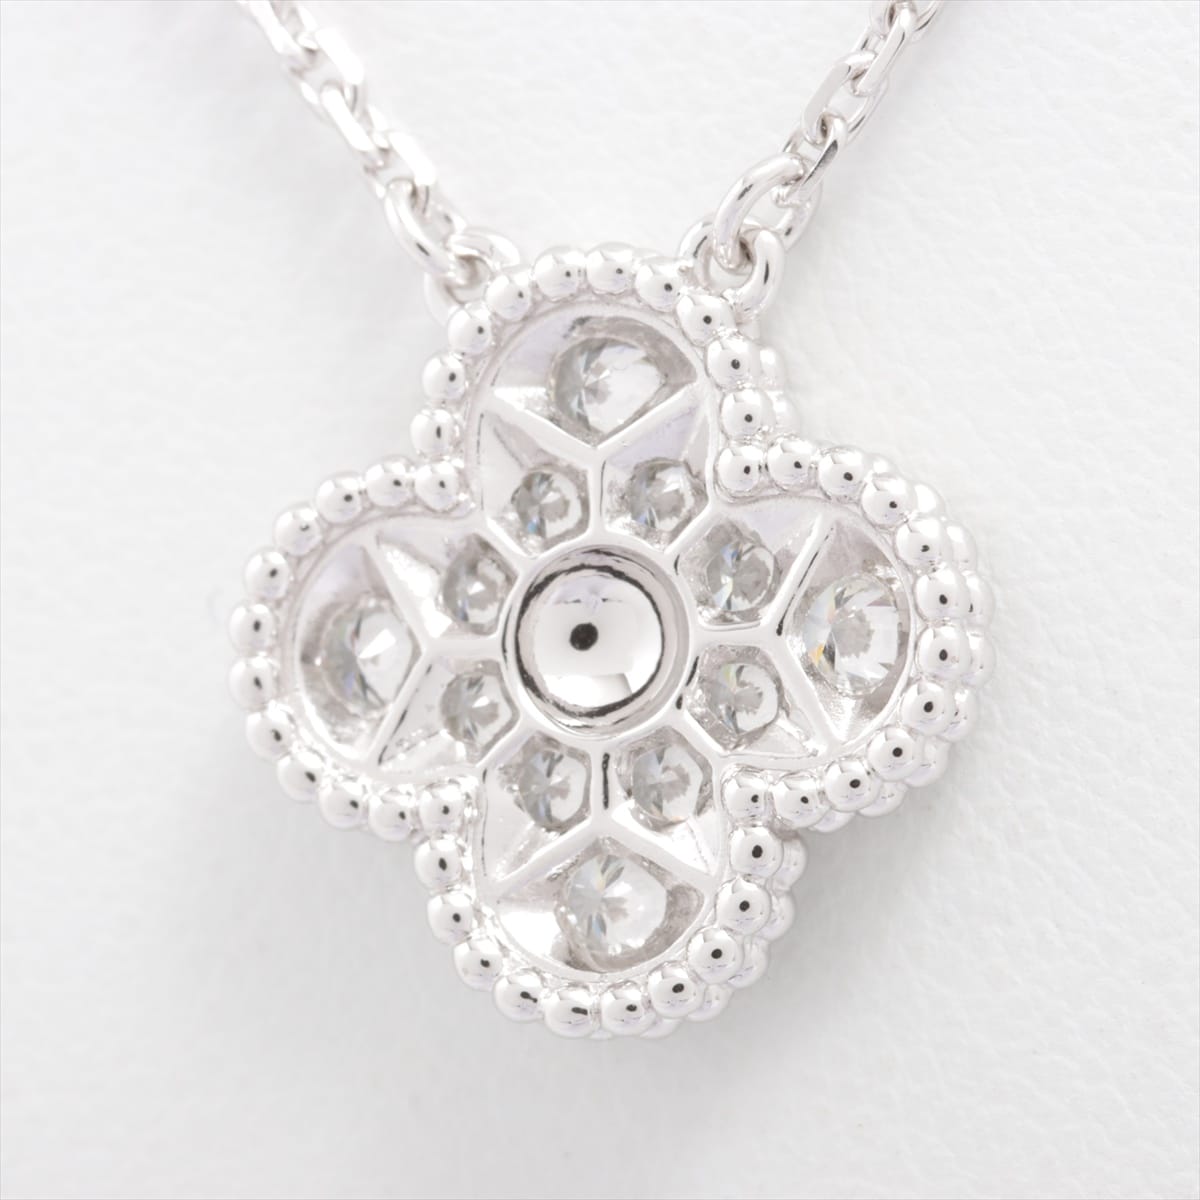 Van Cleef & Arpels Vintage Alhambra diamond Necklace 750WG 6.0g